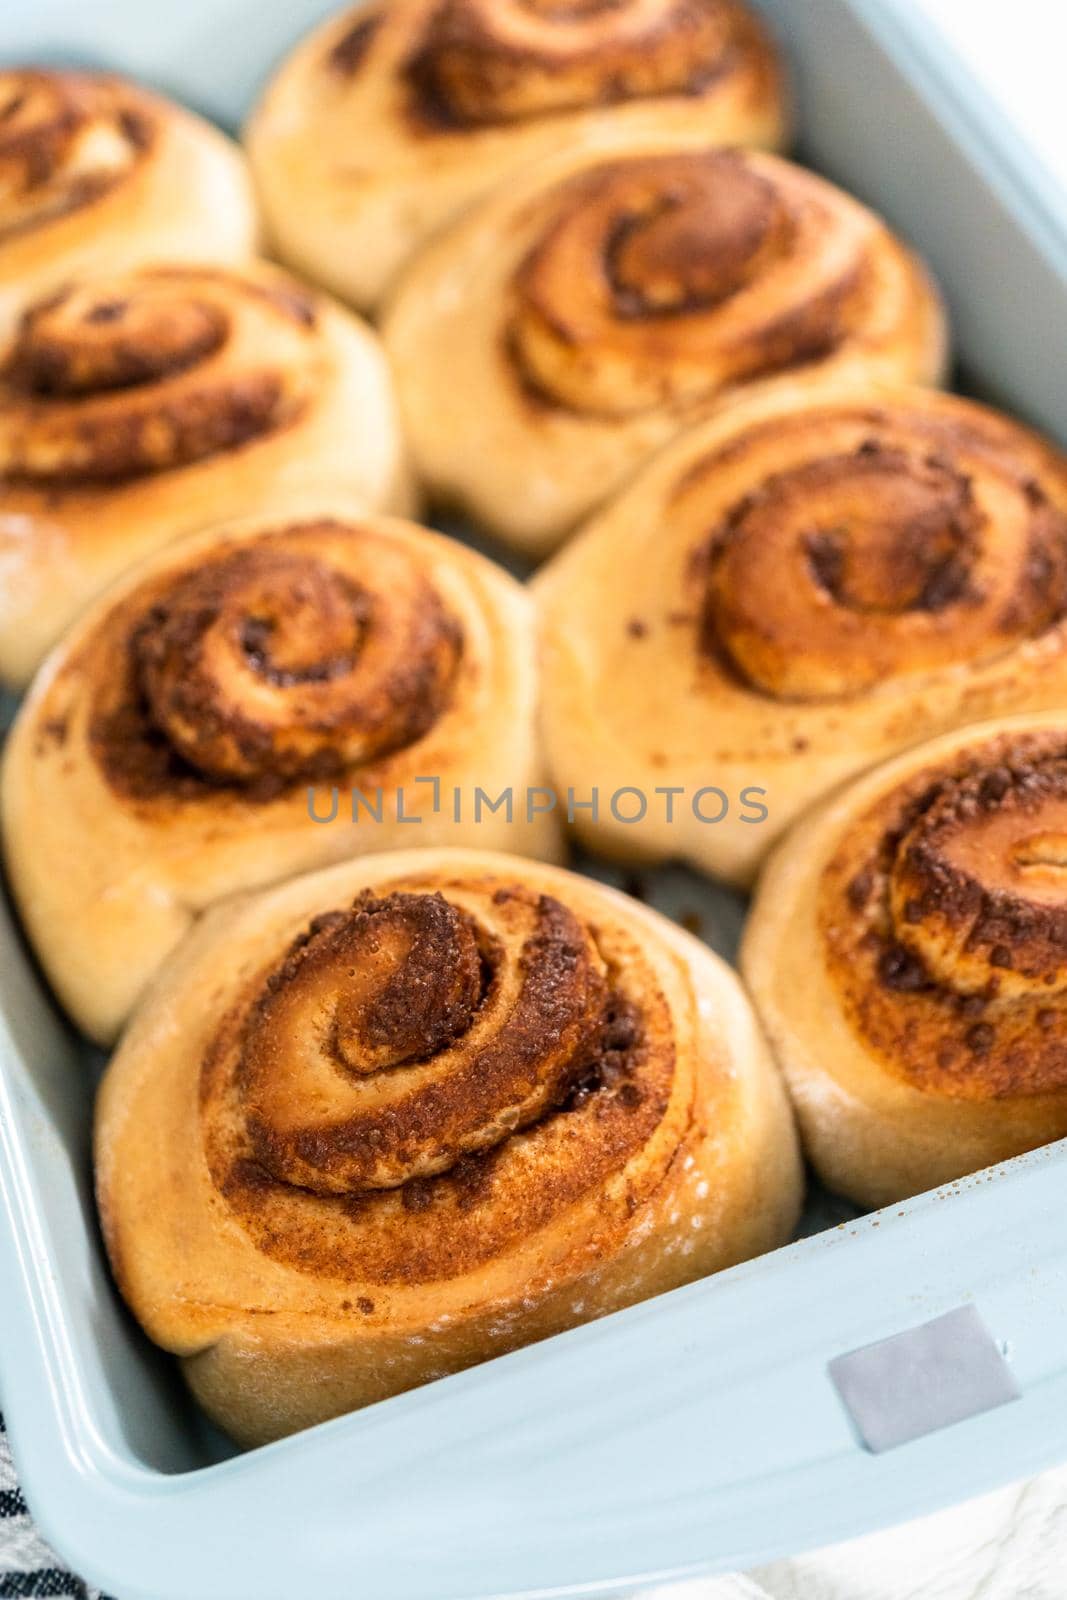 Cinnamon rolls by arinahabich